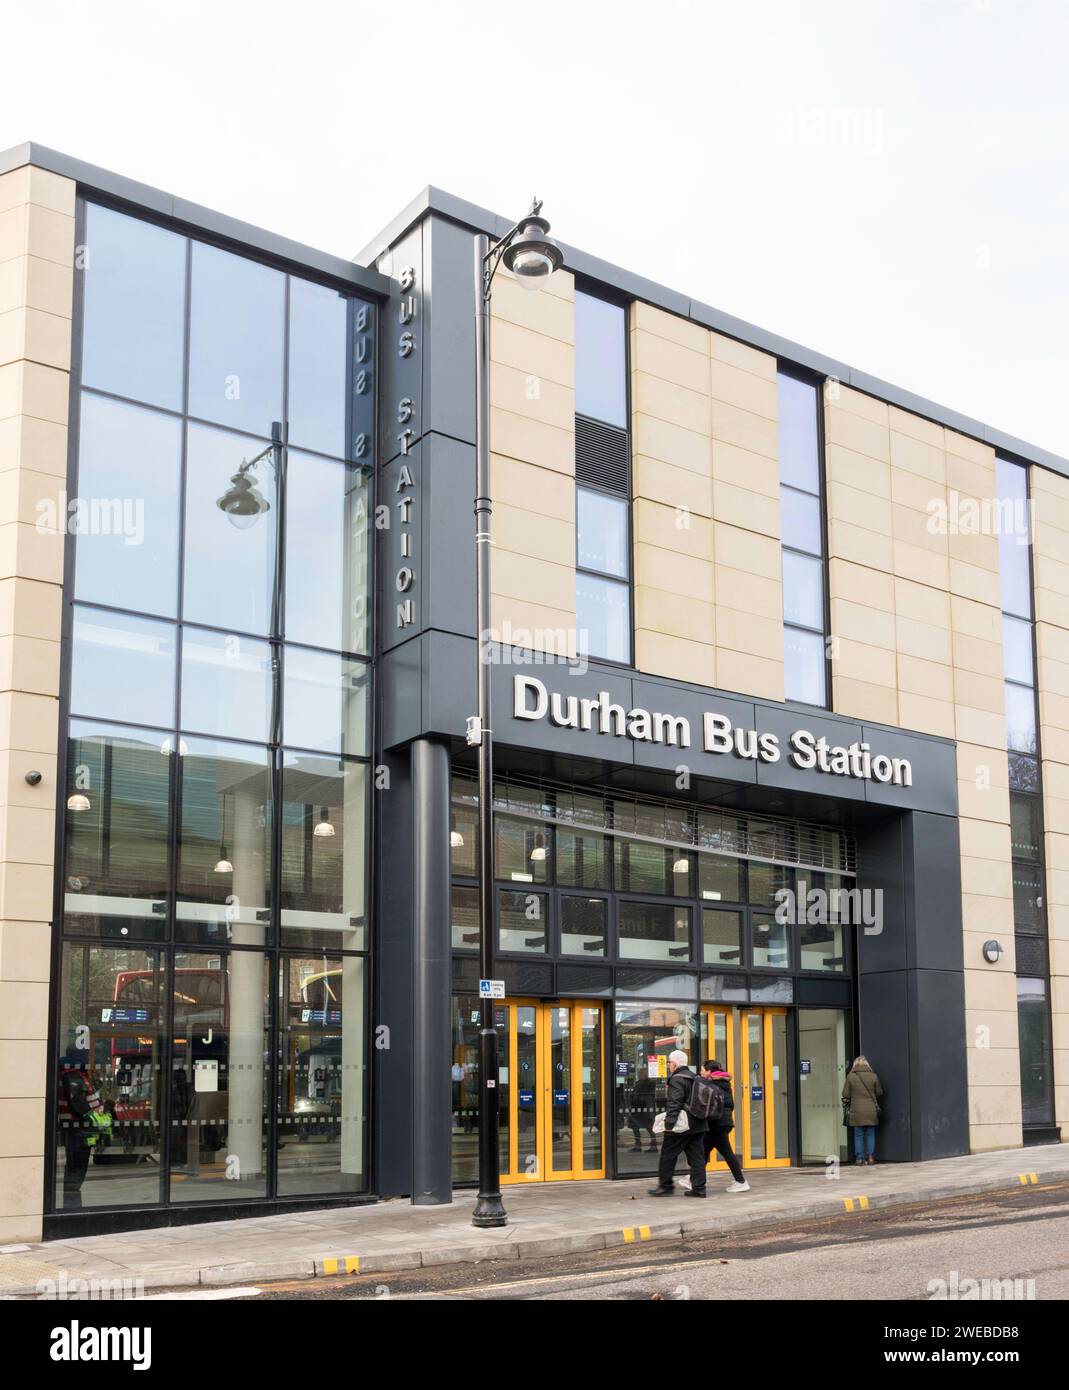 I passeggeri che entrano nella stazione degli autobus di Durham, ricostruita di recente, a Durham City, Inghilterra, Regno Unito Foto Stock